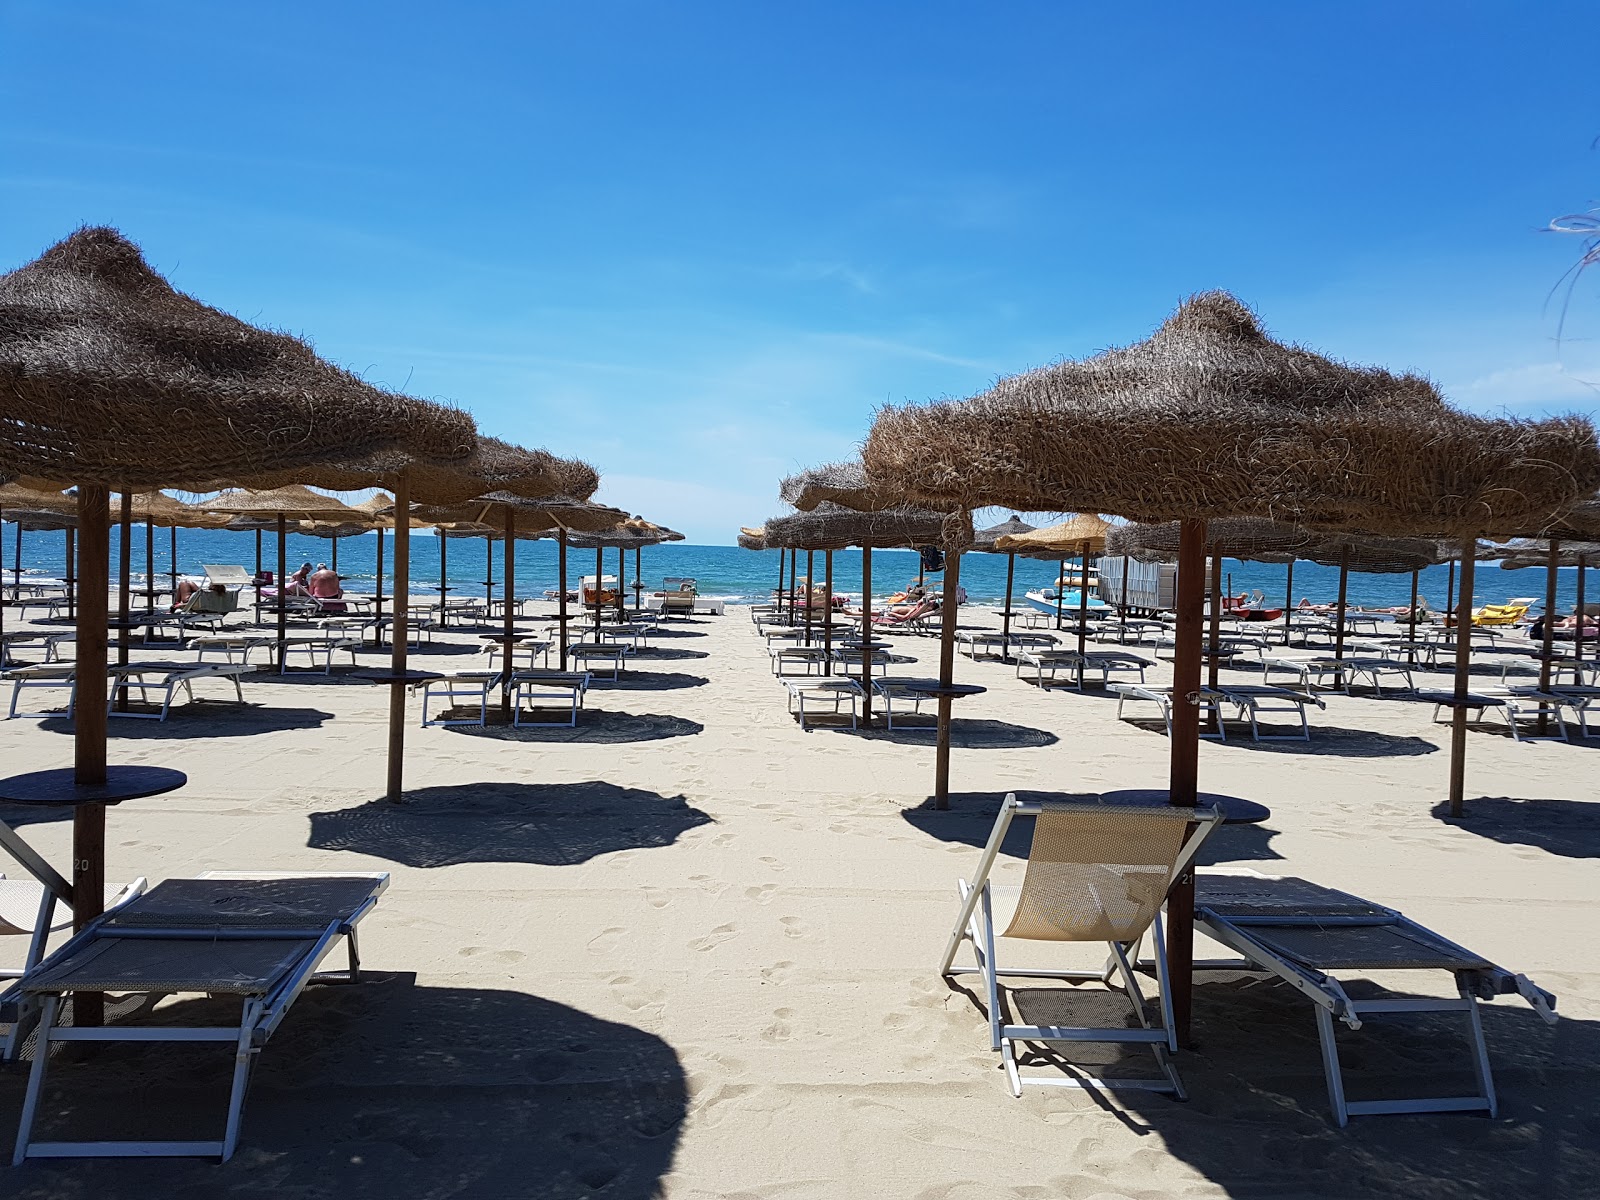 Foto de Spiaggia Libera Tirrenia - lugar popular entre os apreciadores de relaxamento